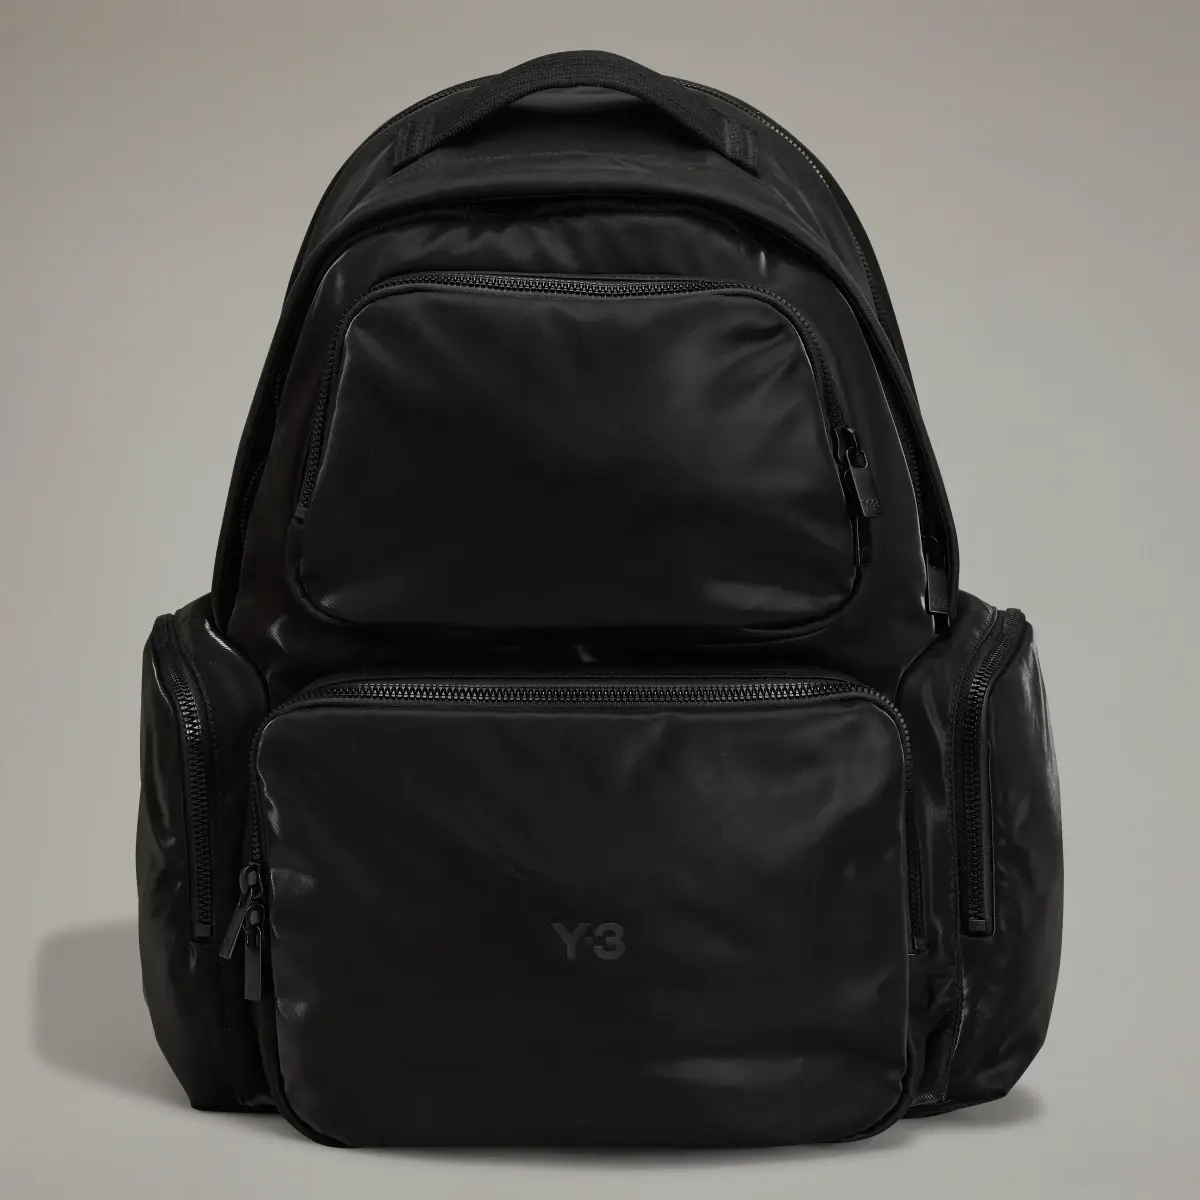 Adidas Y-3 Utility Backpack. 2